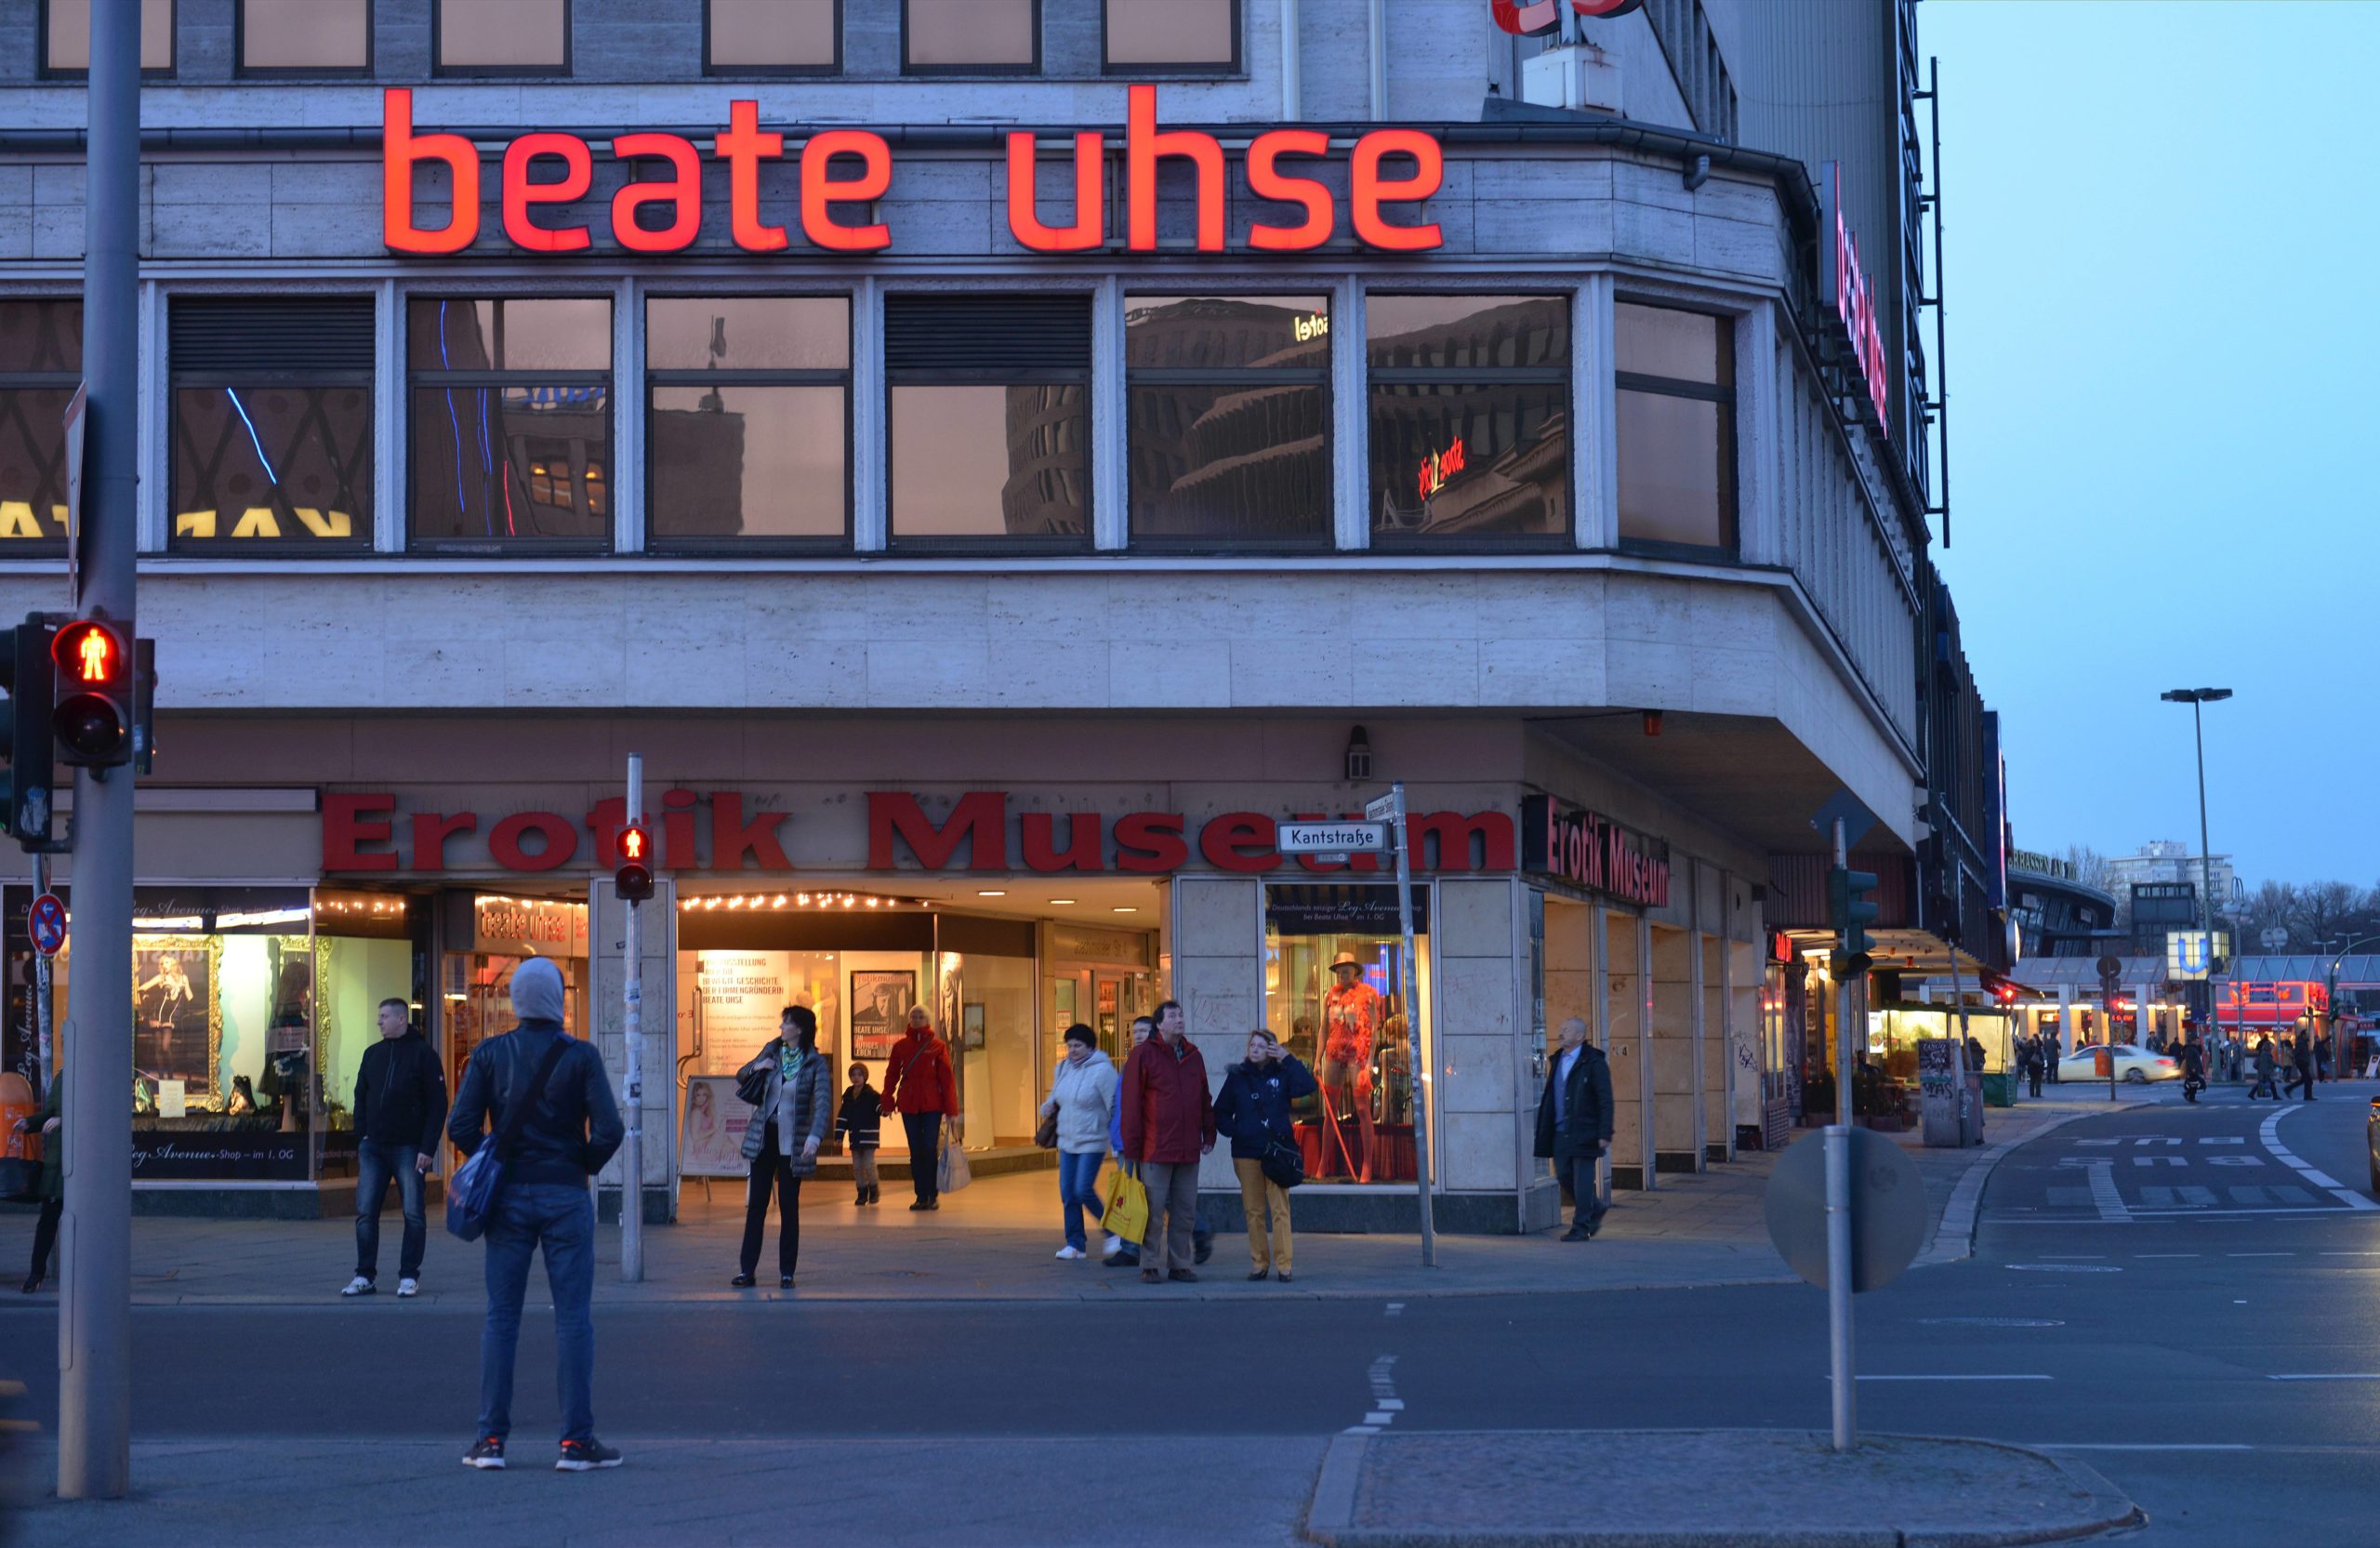 Beate Uhse – Erotik Museum in der Kantstrasse, Charlottenburg, 2014. Foto: Imago/Schöning